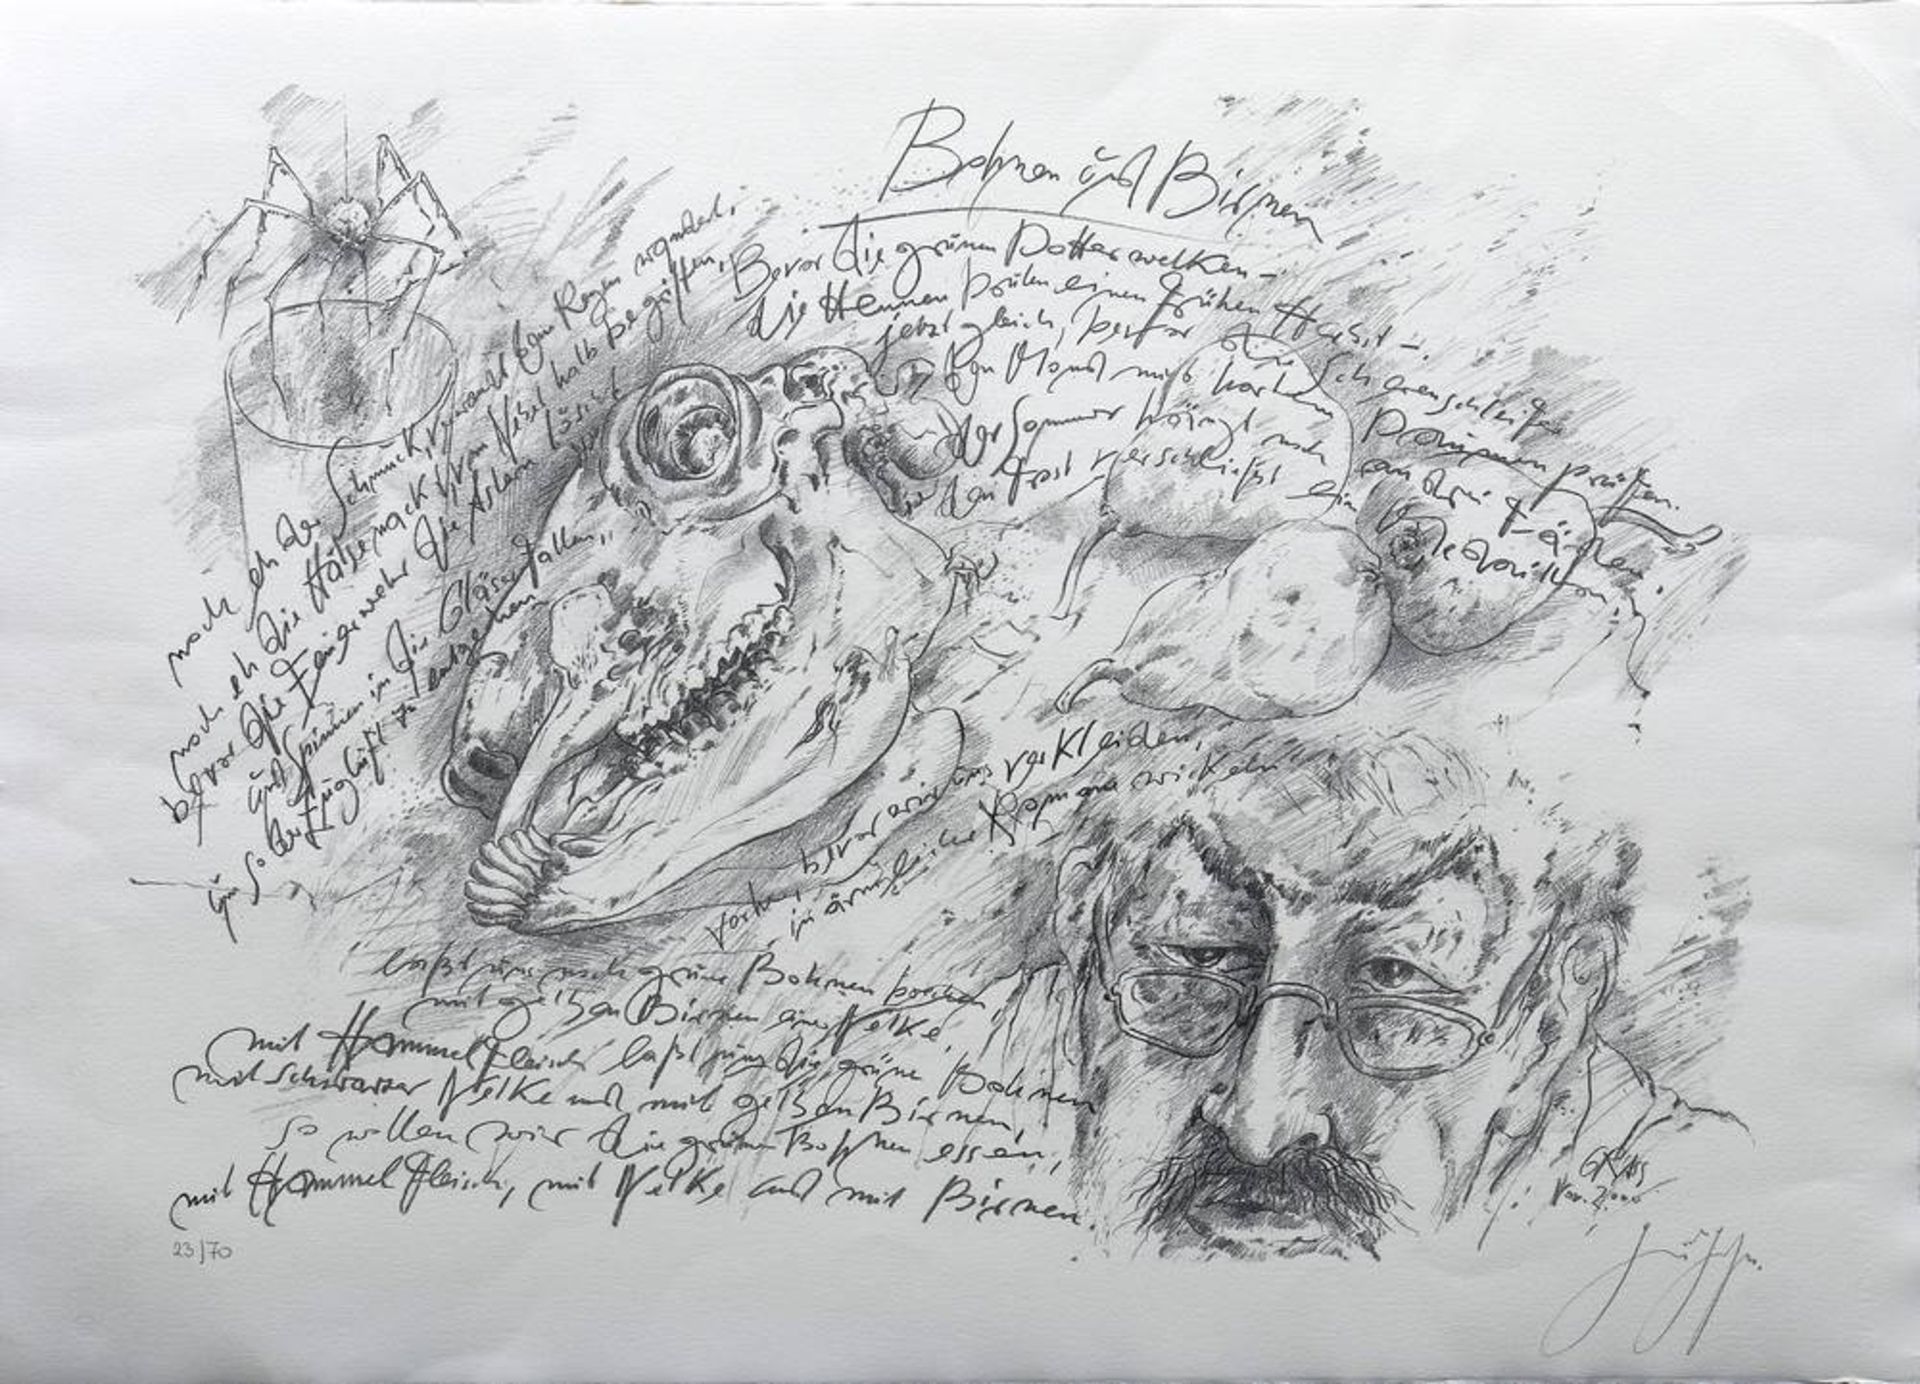 Günter Grass (1927, Danzig - 2015, Lübeck), "Bohnen und Birnen" (self portrait and animal skull),